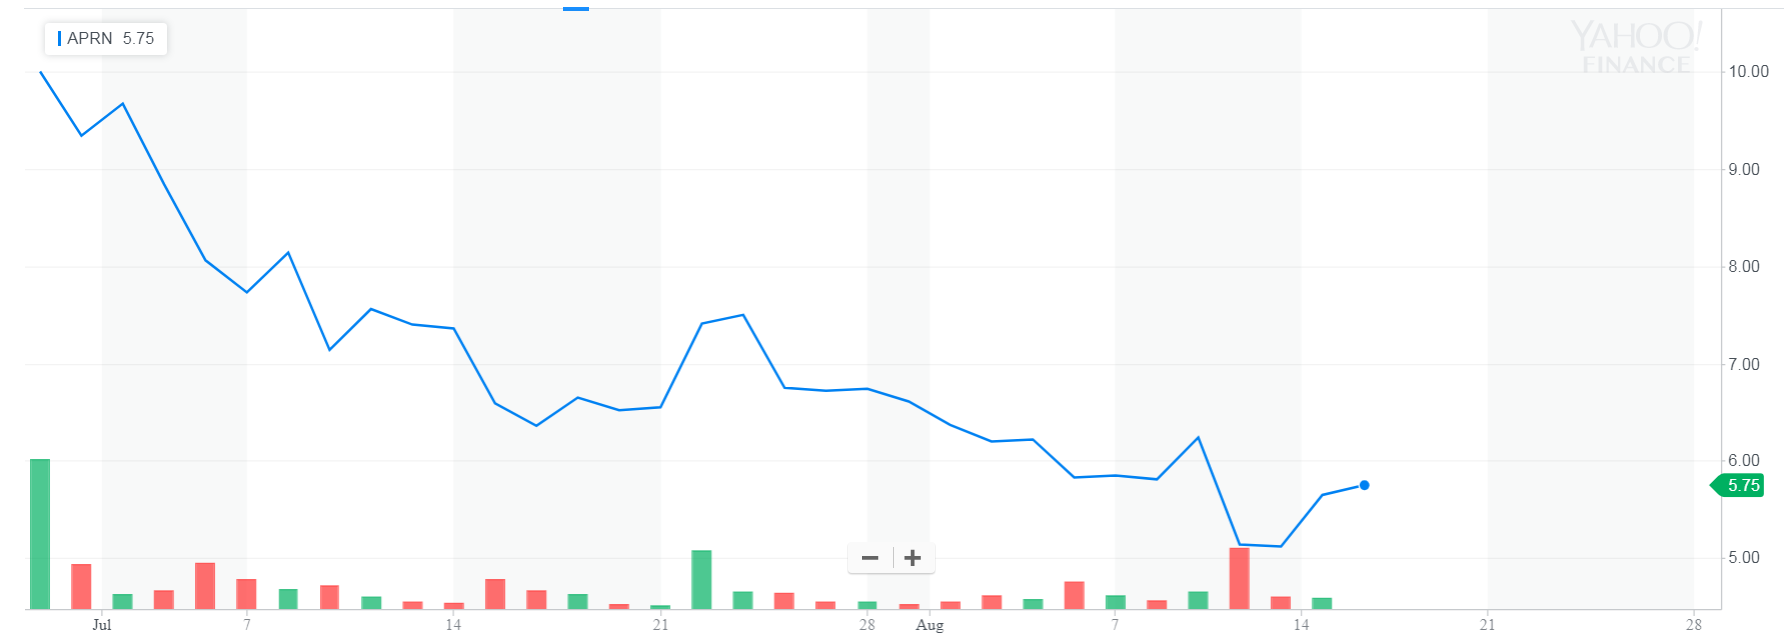 Курс акций Blue Apron сразу после IPO